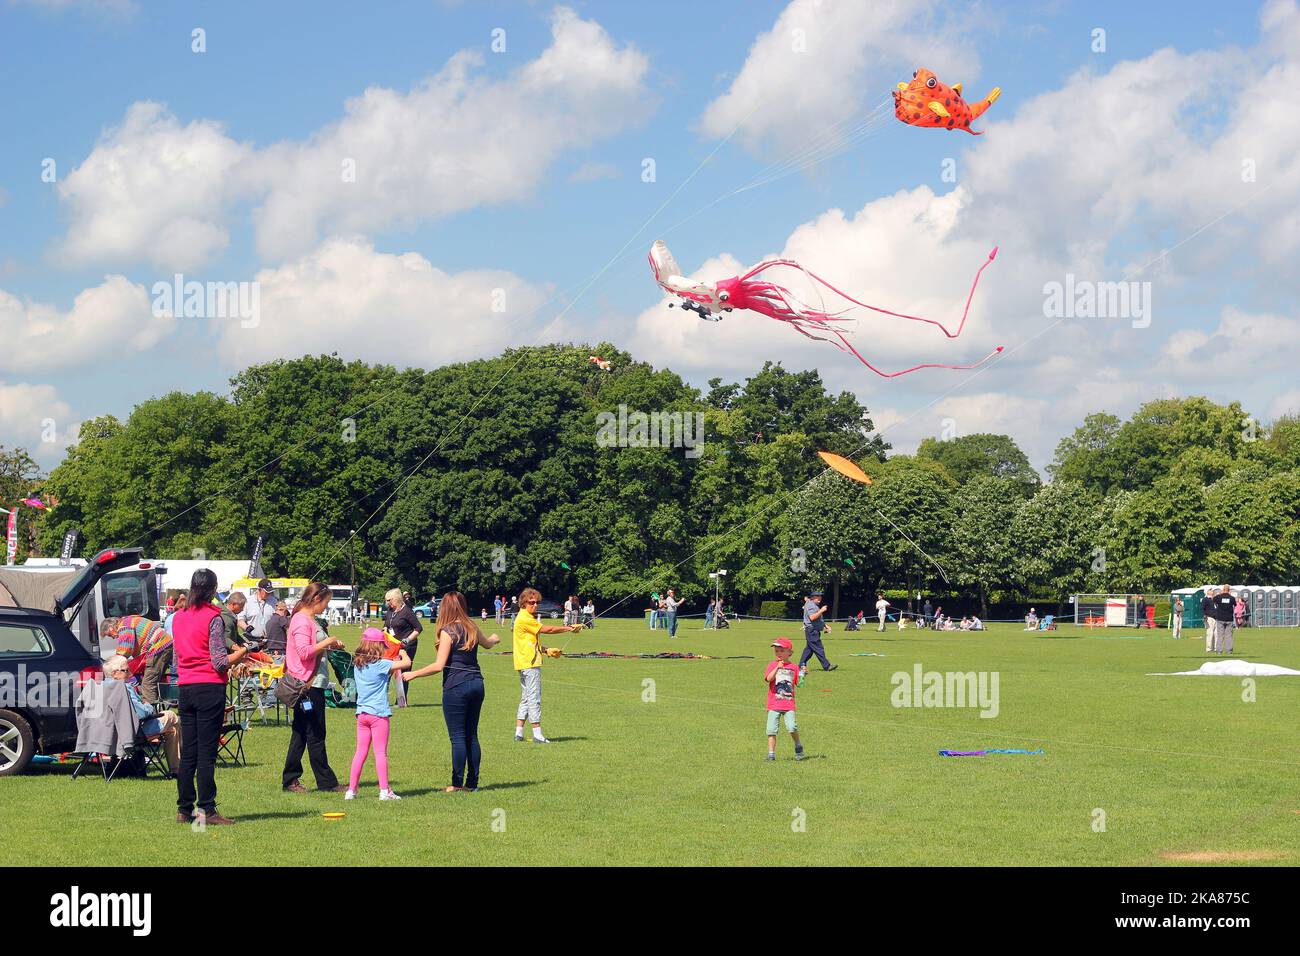 Drachen fliegen beim jährlichen Drachenfest entlang der Uferpromenade in Bedford, Großbritannien. Drachenflieger aus der ganzen Welt nehmen an dieser jährlichen Veranstaltung Teil. Stockfoto